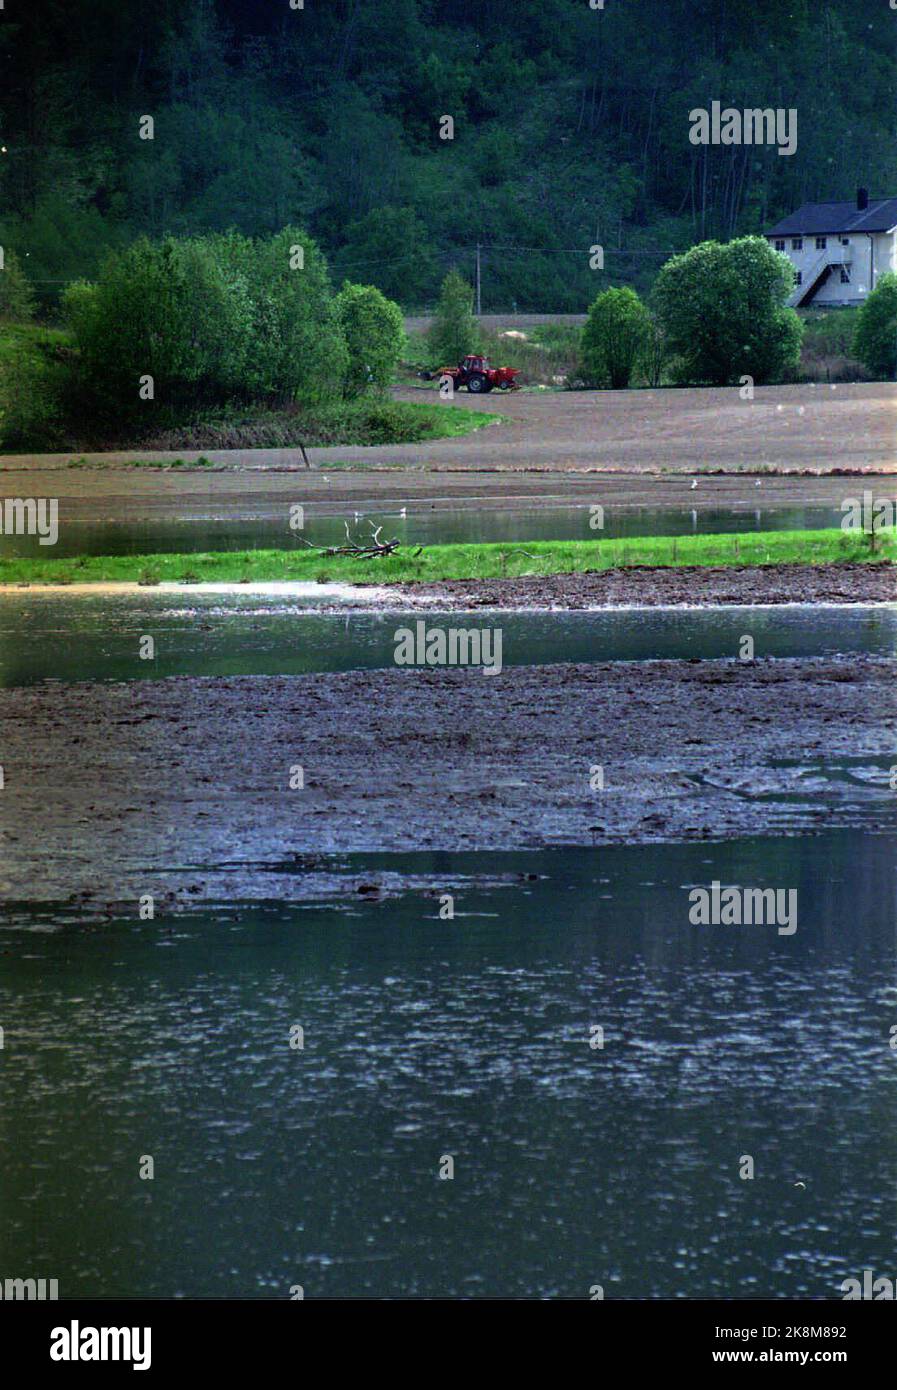 1995-05-30: Catastrophe d'inondation dans l'est de la Norvège et à Trøndelag. En raison de la fonte des neiges et de la pluie, l'est de la Norvège est touché par les inondations et les inondations. Ici de Trøndelag: La rivière Gaula à Trøndelag a traversé ses berges et a posé de grandes zones cultivées sous l'eau. Catastrophe des inondations 1995. Photo: Gorm Kallestad / NTB / NTB Banque D'Images